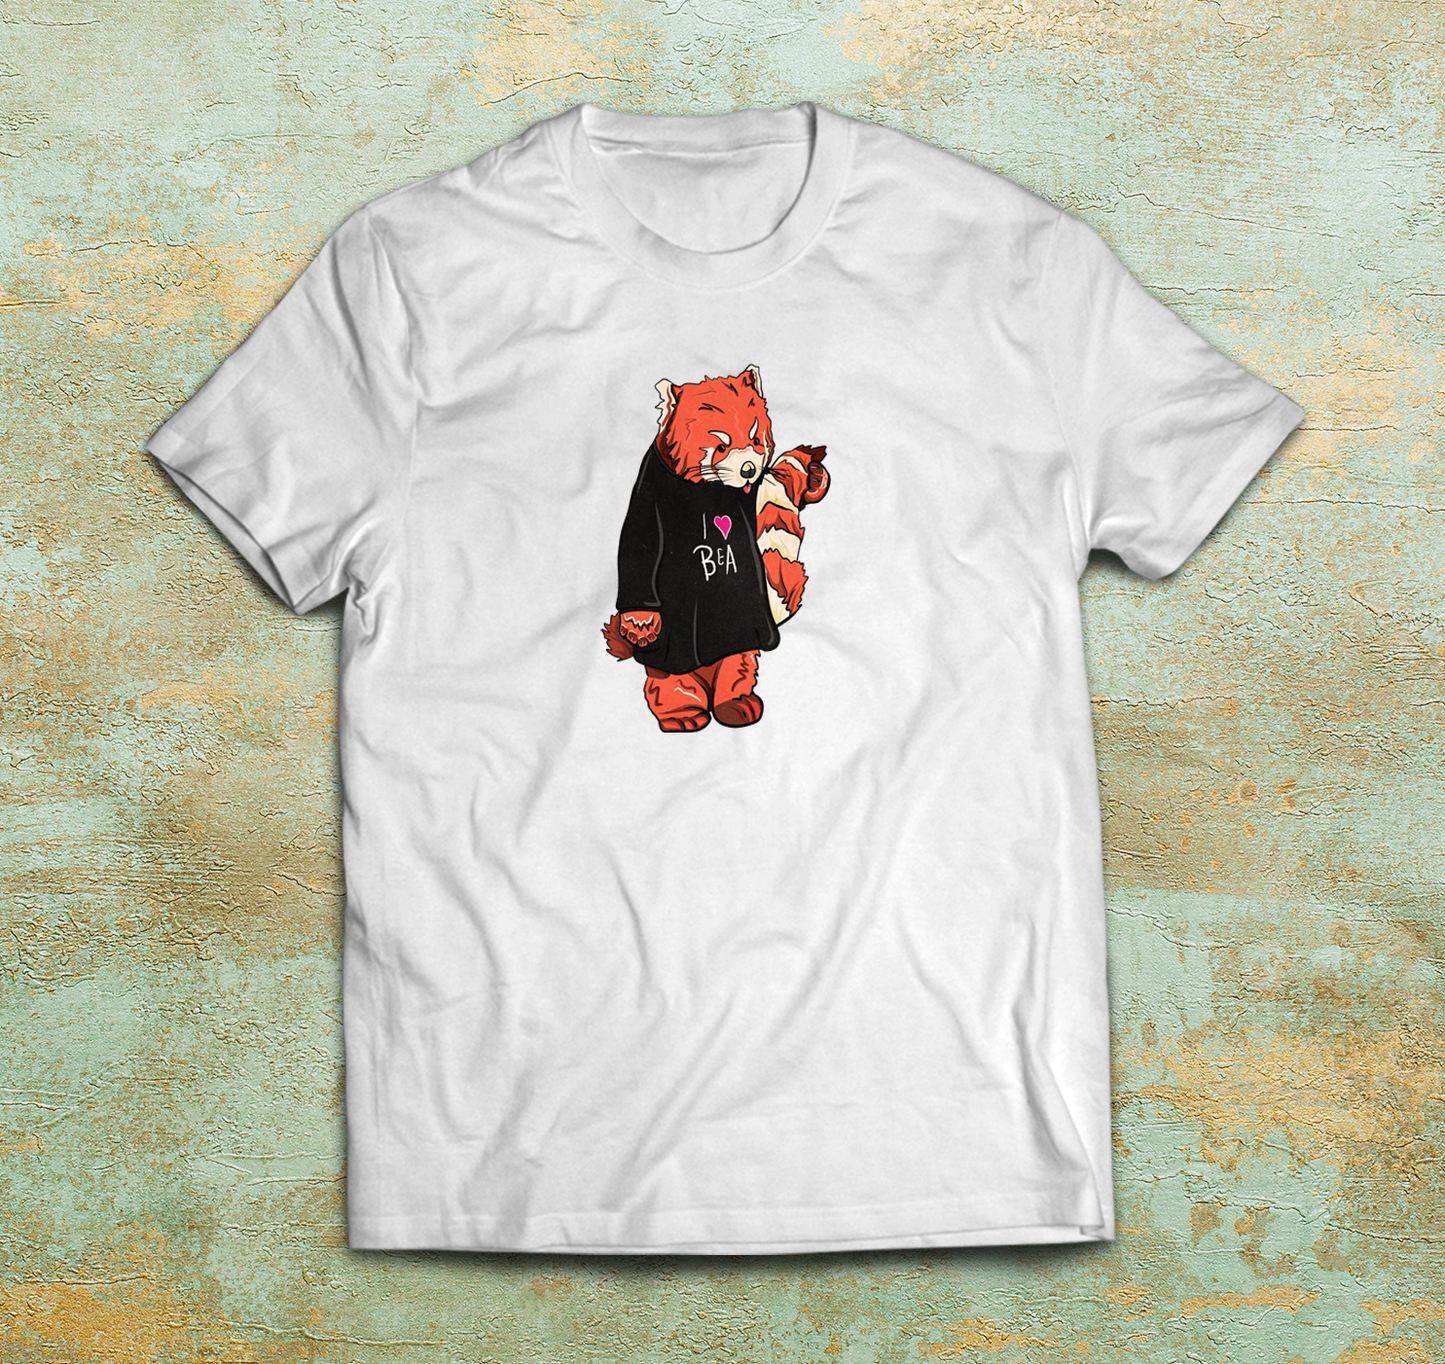 Beabadoobee 'I Heart Bea' Red Panda Shirt